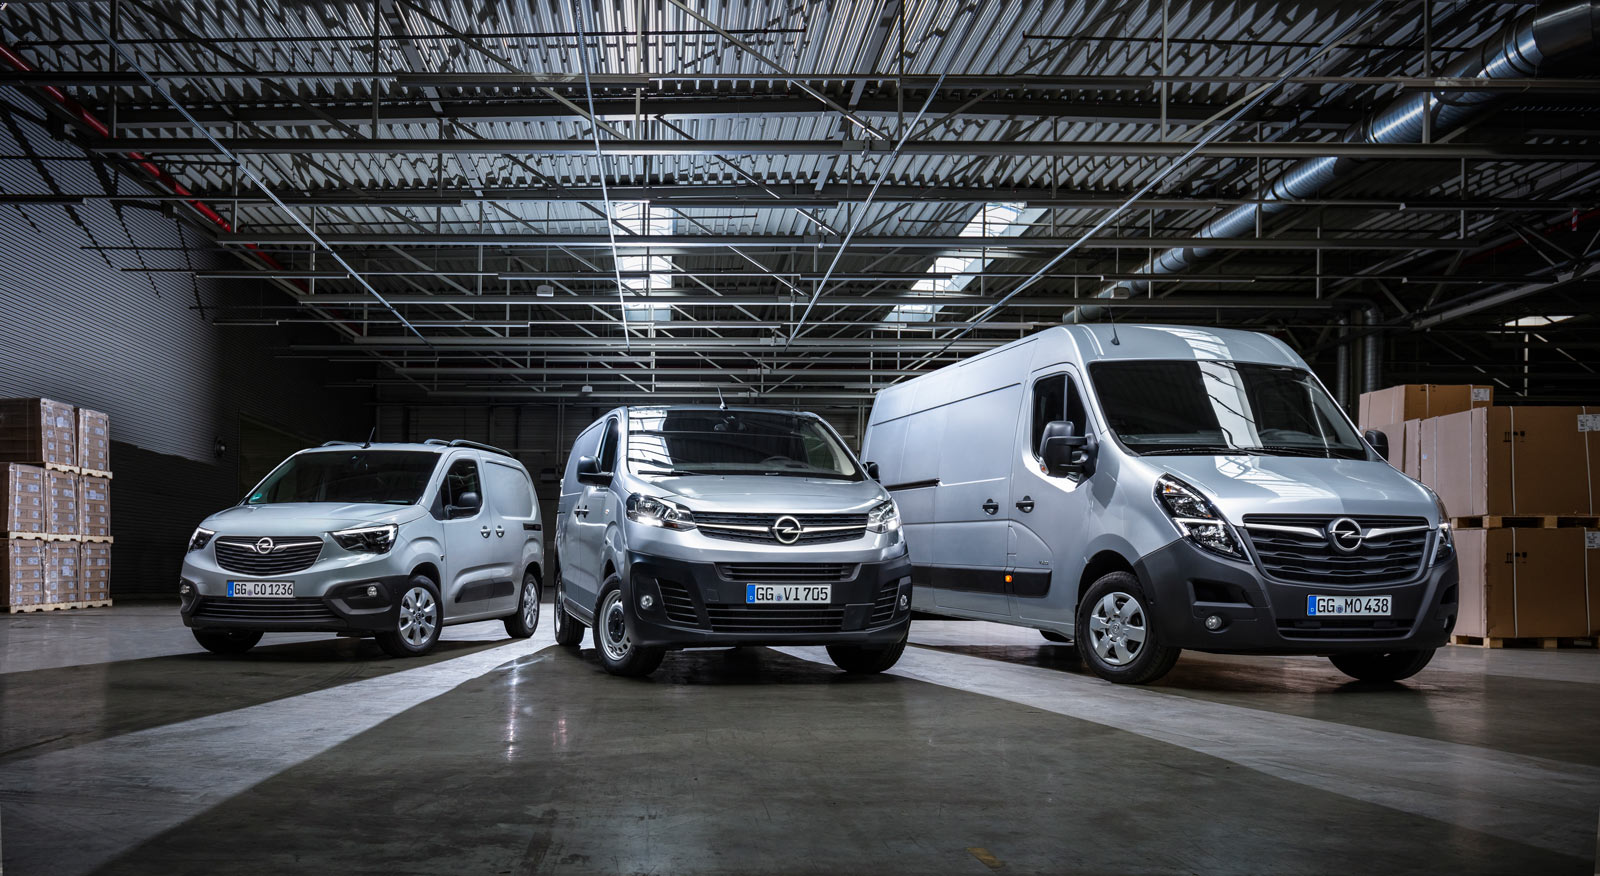 Gama samochodów dostawczych Opel rok modelowy 2020. Combo Cargo, Vivaro C, poliftingowe Movano B